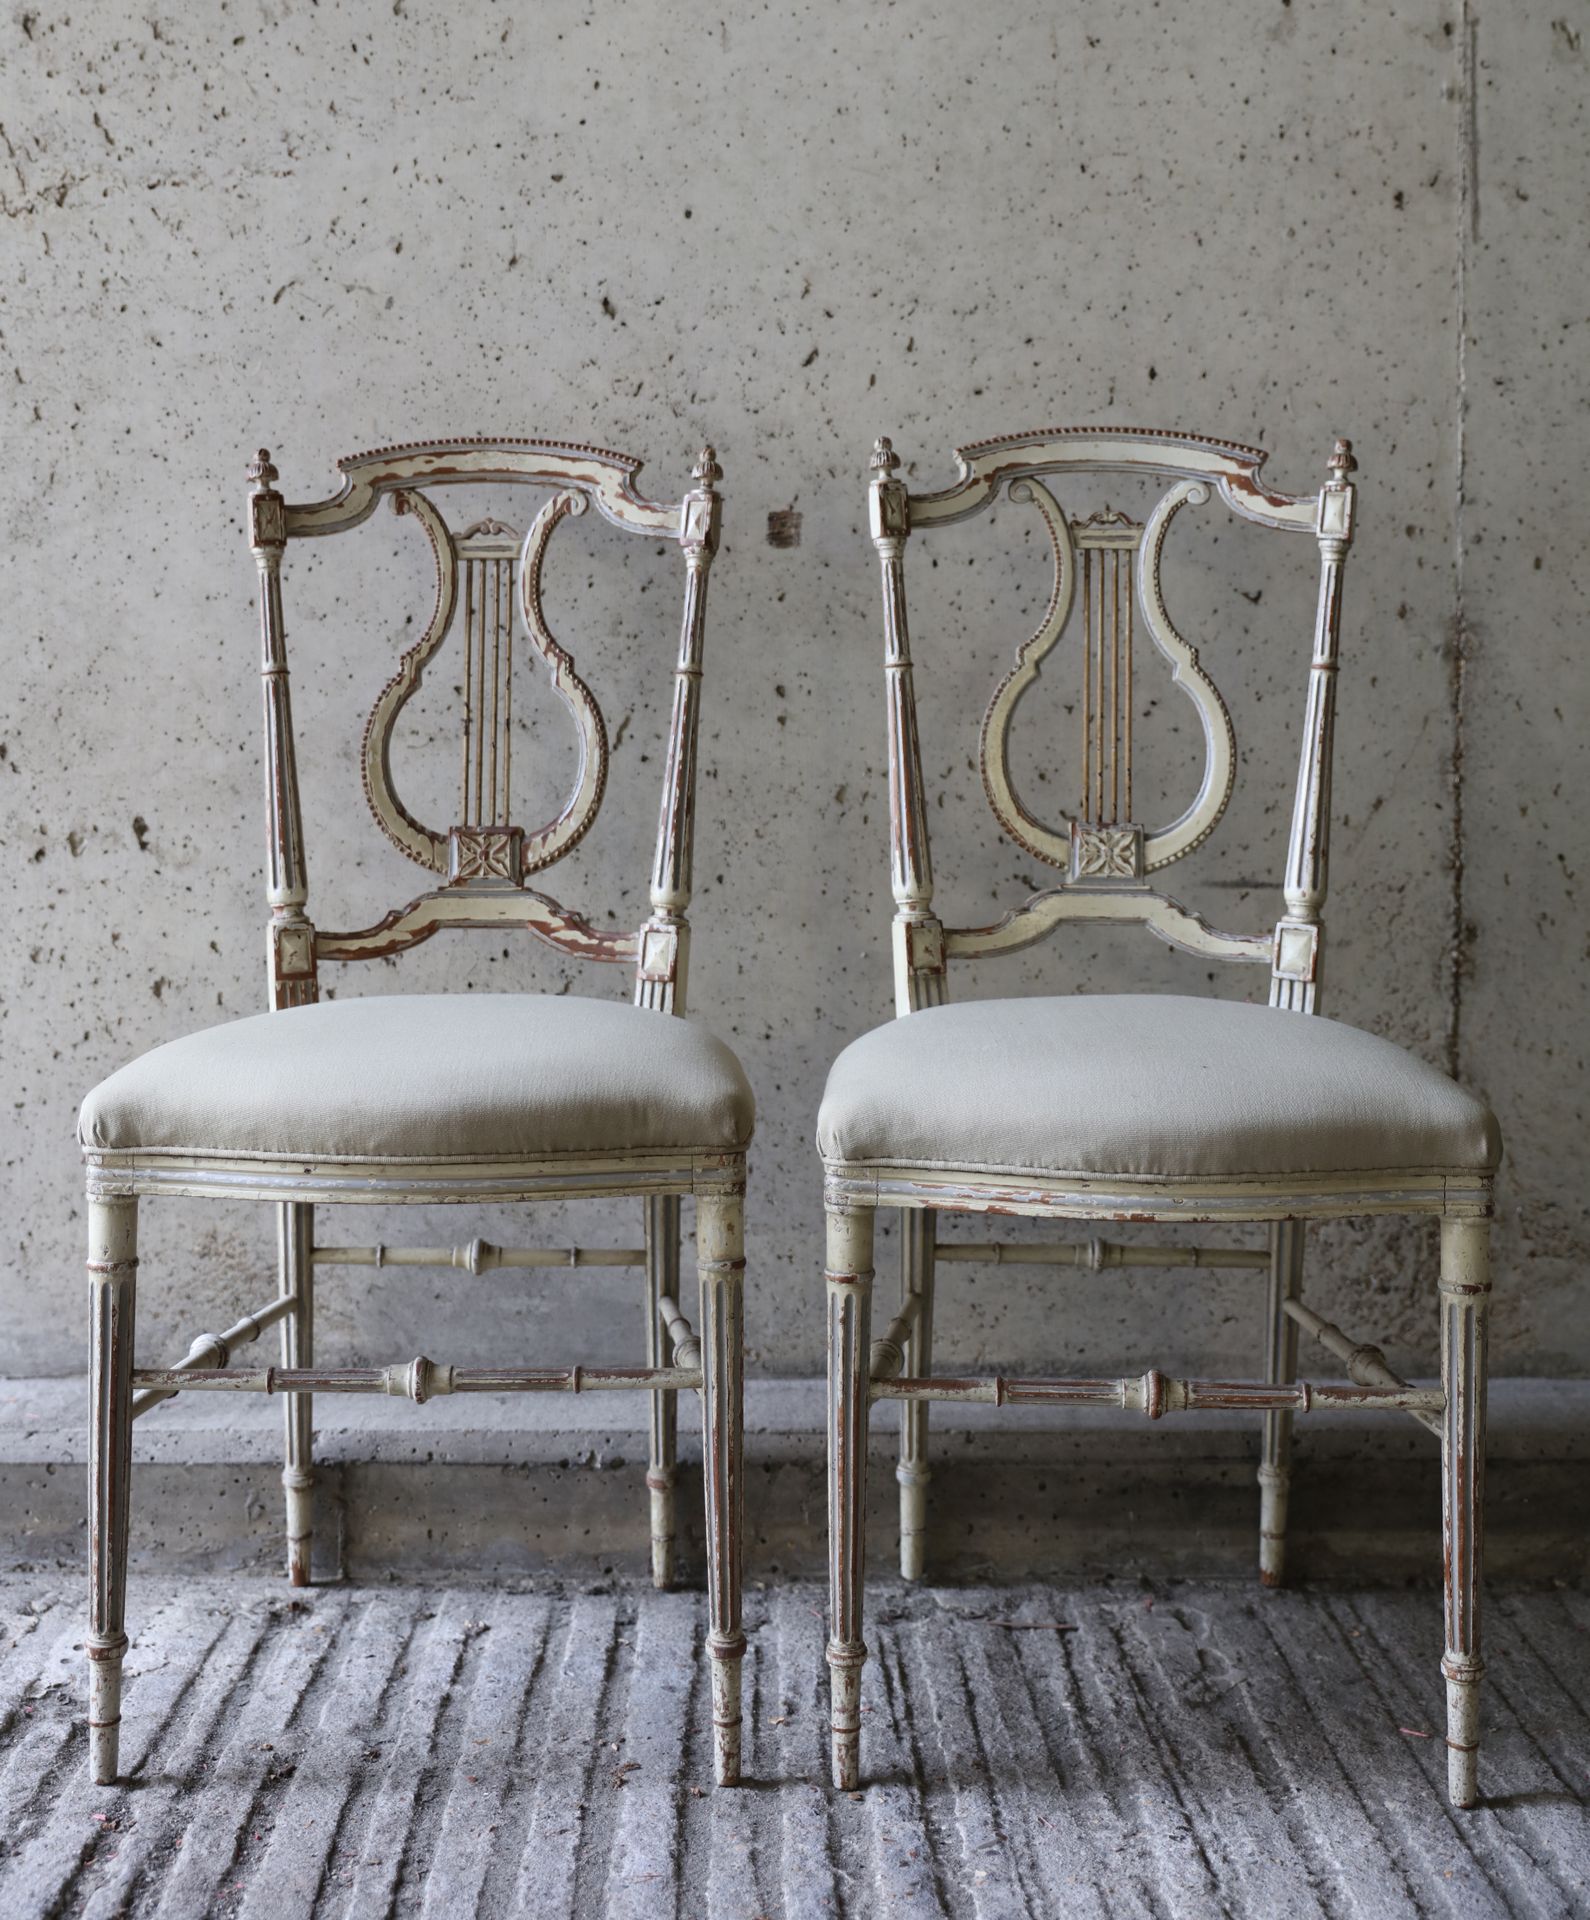 VARIA Paar Stühle im Stil Louis XVI, Rückenlehne in Form einer Leier
Paar stoelt&hellip;